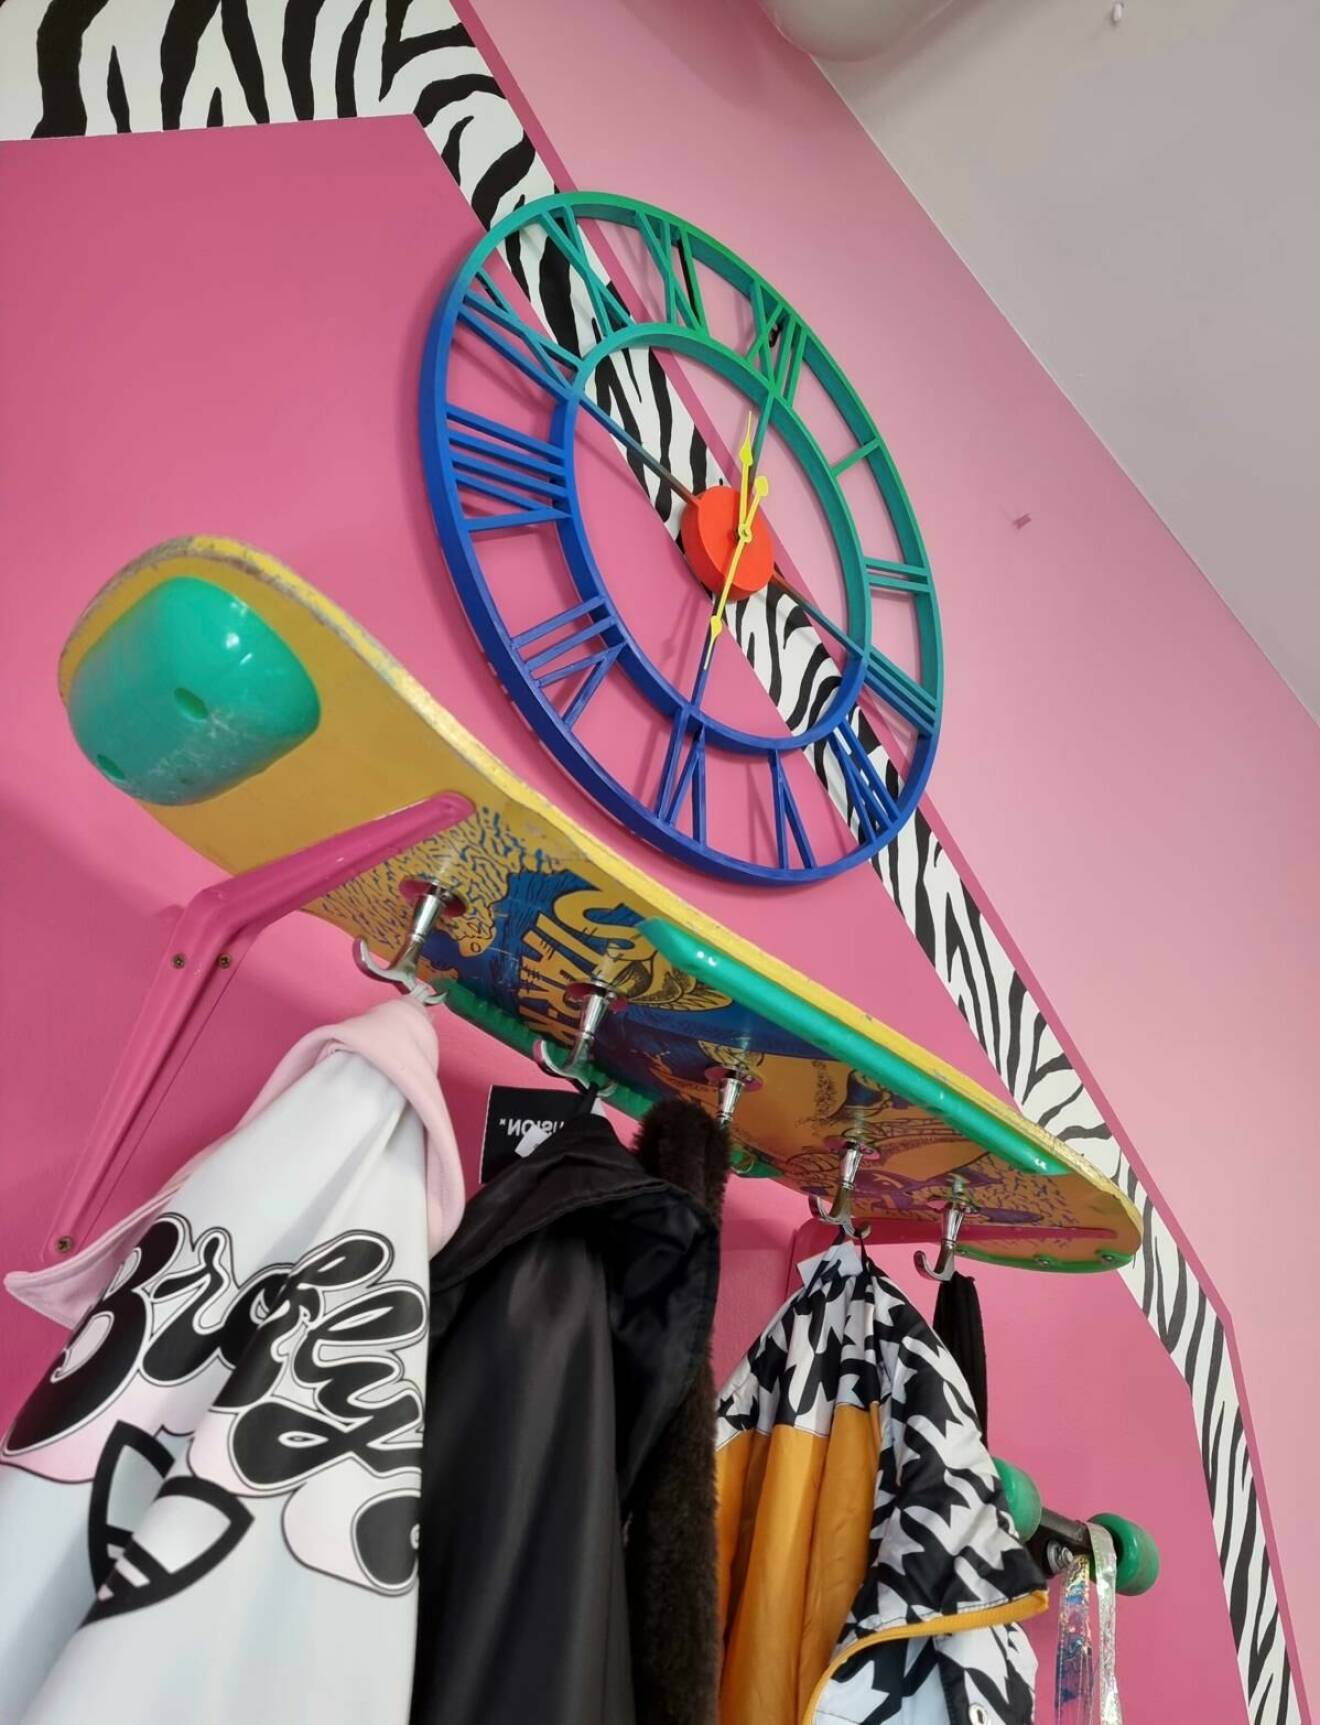 En färggrann skateboard som fungerar som klädhängare.